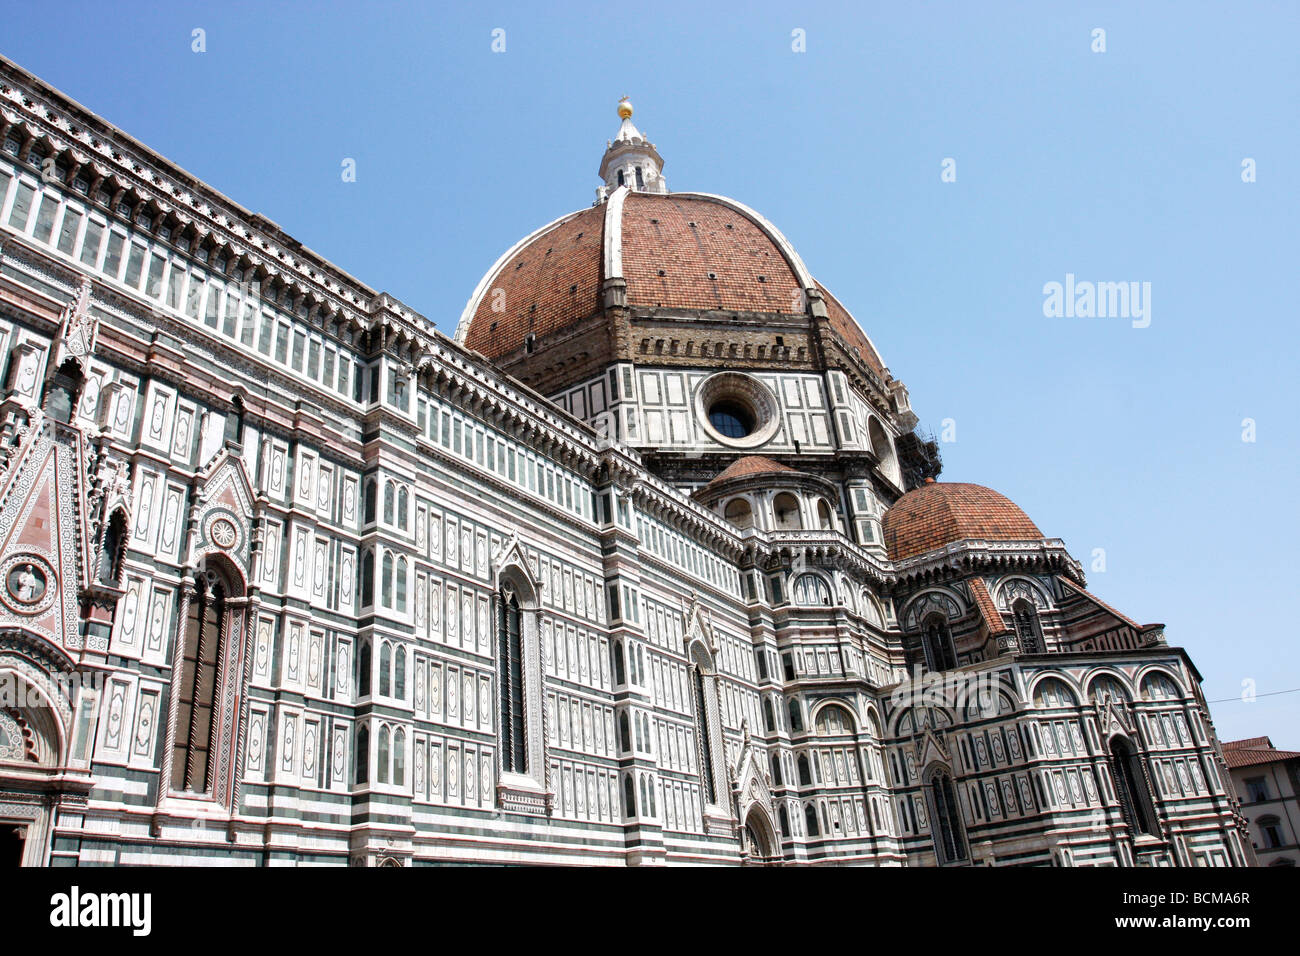 Der Dom, Filippo Brunelieschis berühmten enorme Kuppel der Kathedrale dominiert die Skyline von Florence.Tuscany, Florenz Stockfoto